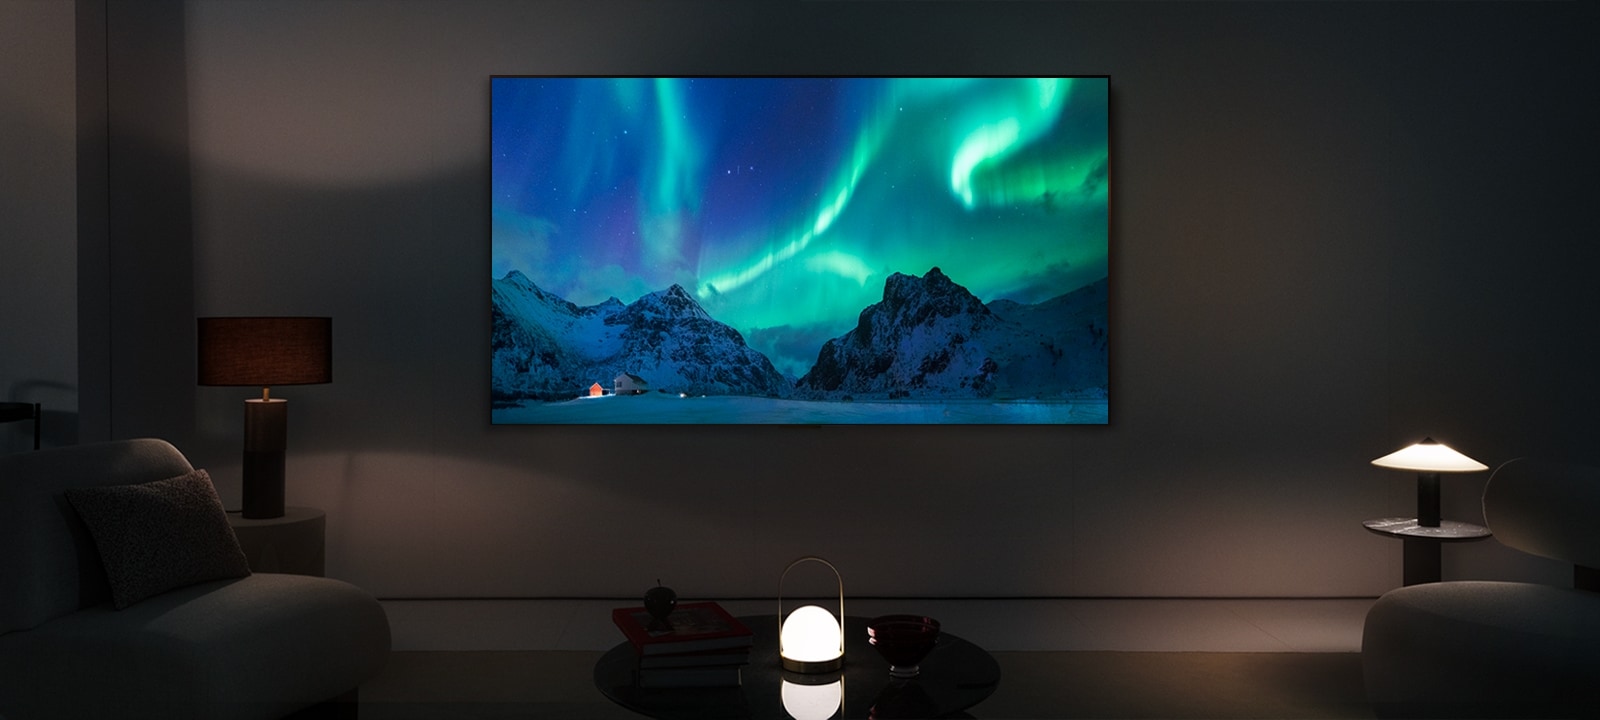 LG OLED TV en un moderno salón durante la noche. La imagen en pantalla de la aurora boreal se muestra con los niveles de brillo ideales.